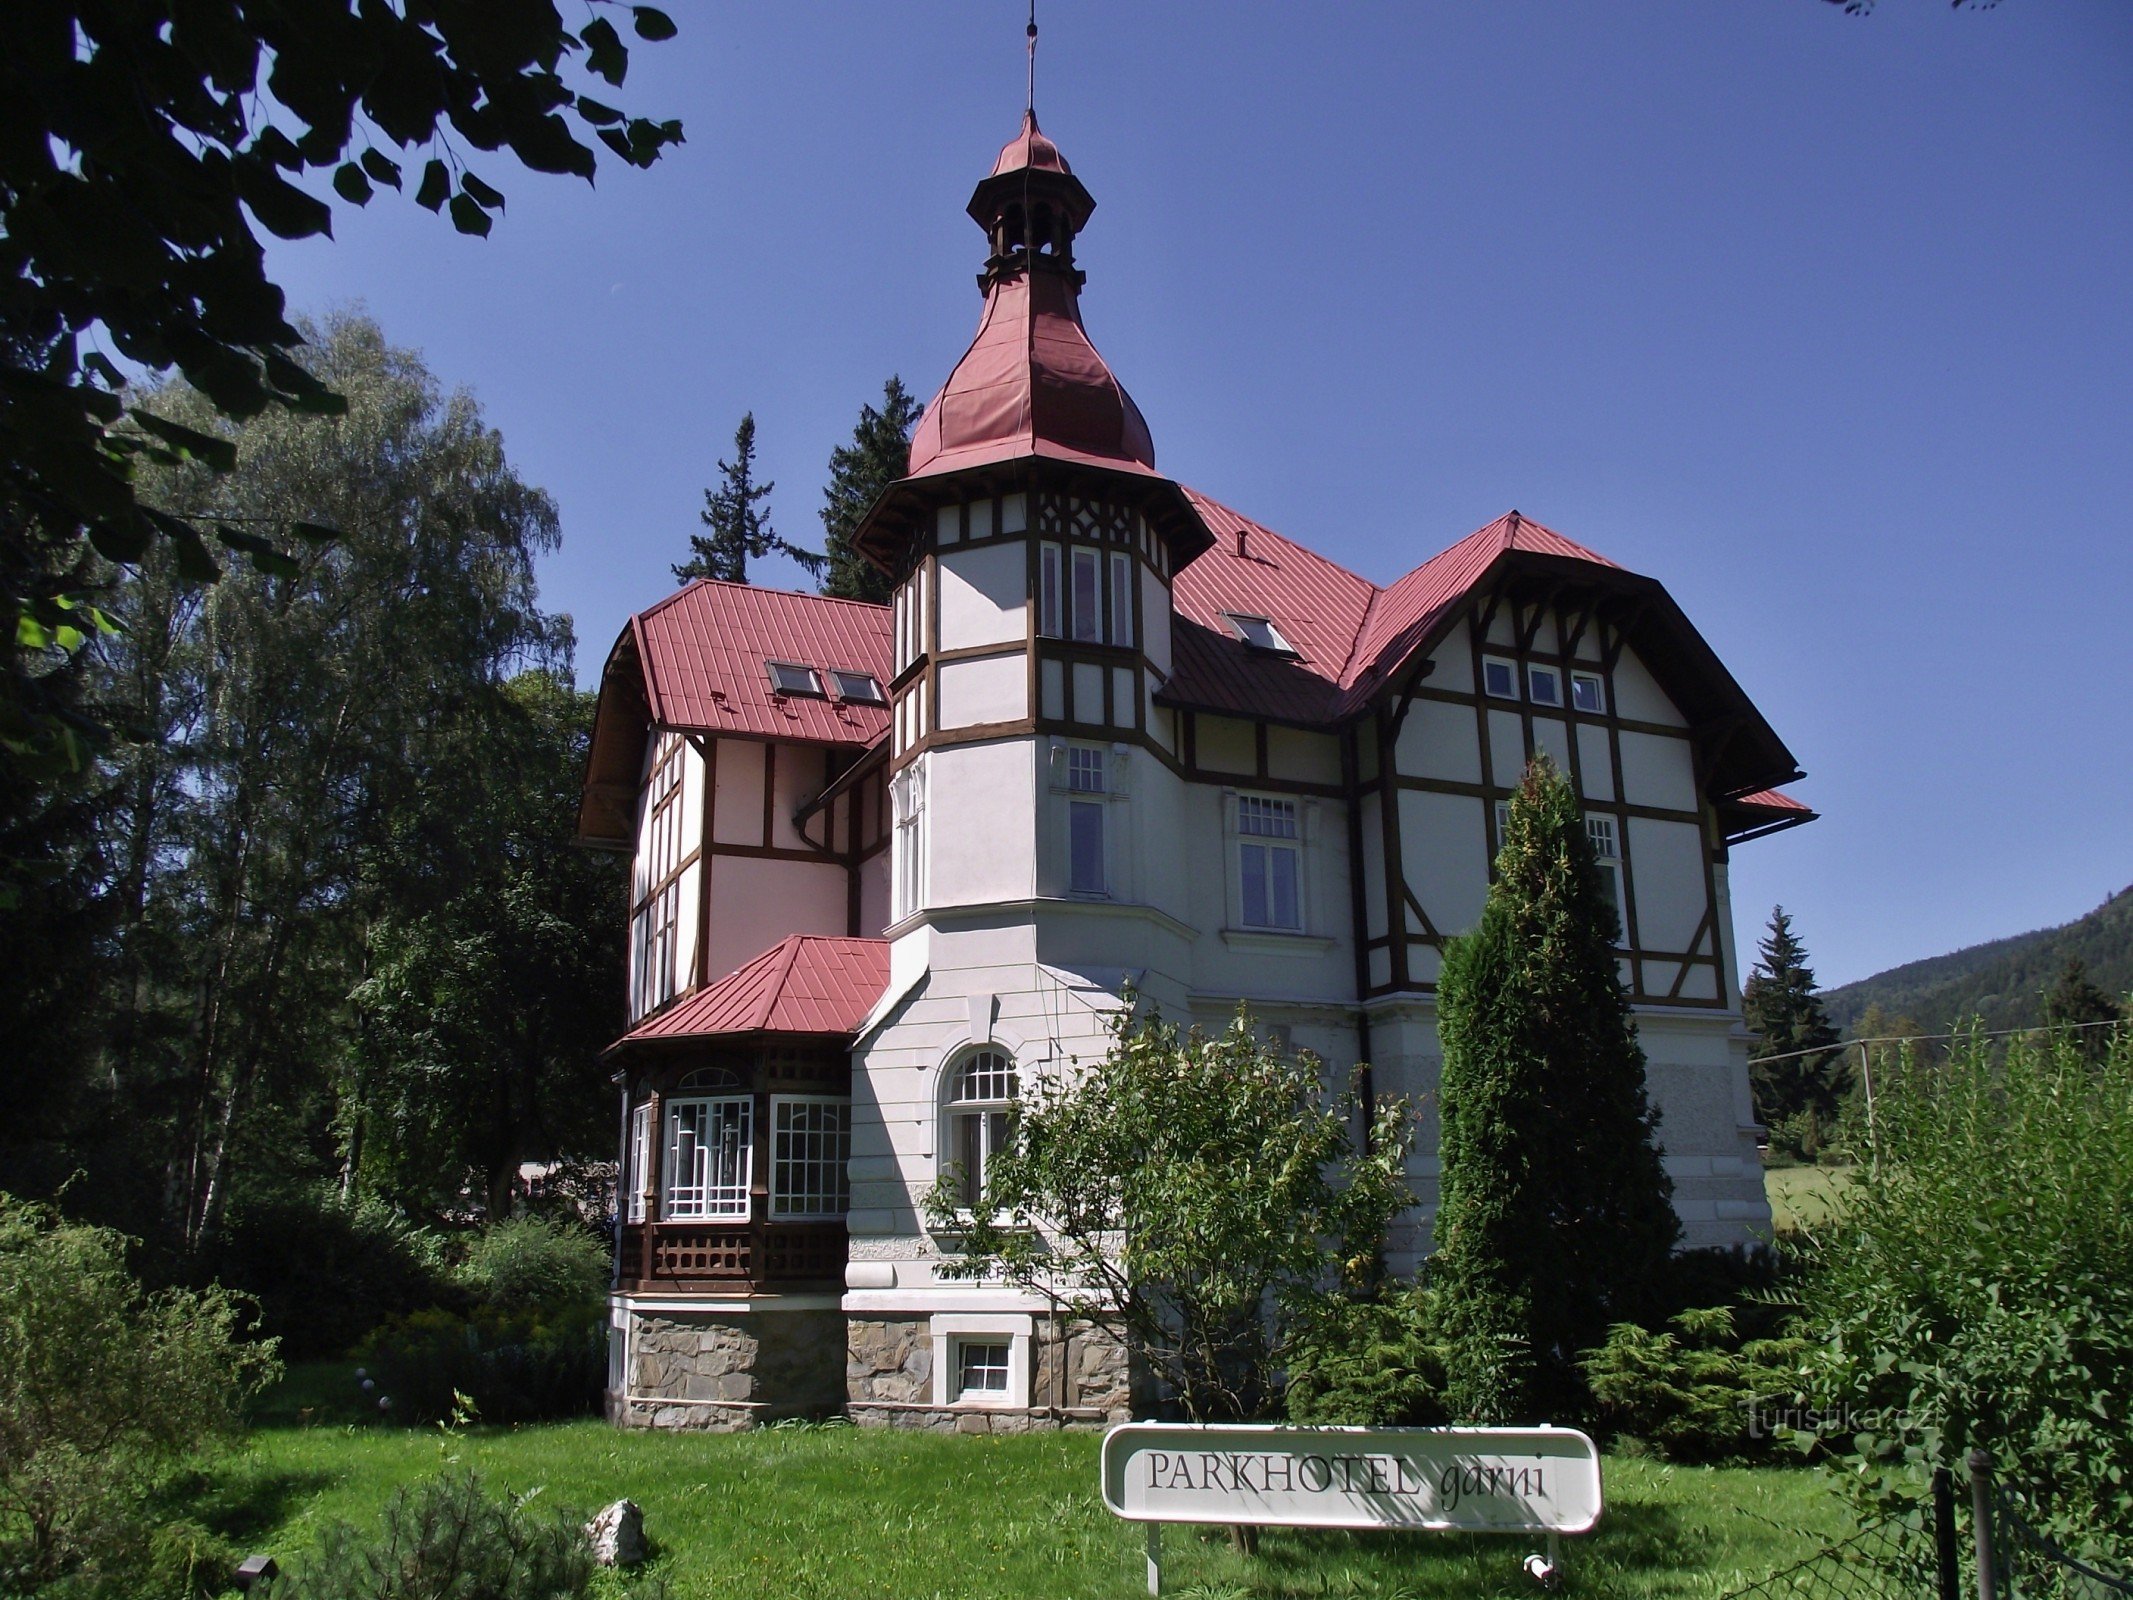 Vrbno pod Pradědem – Villa Art Nouveau Grohmann (Parkhotel garni)